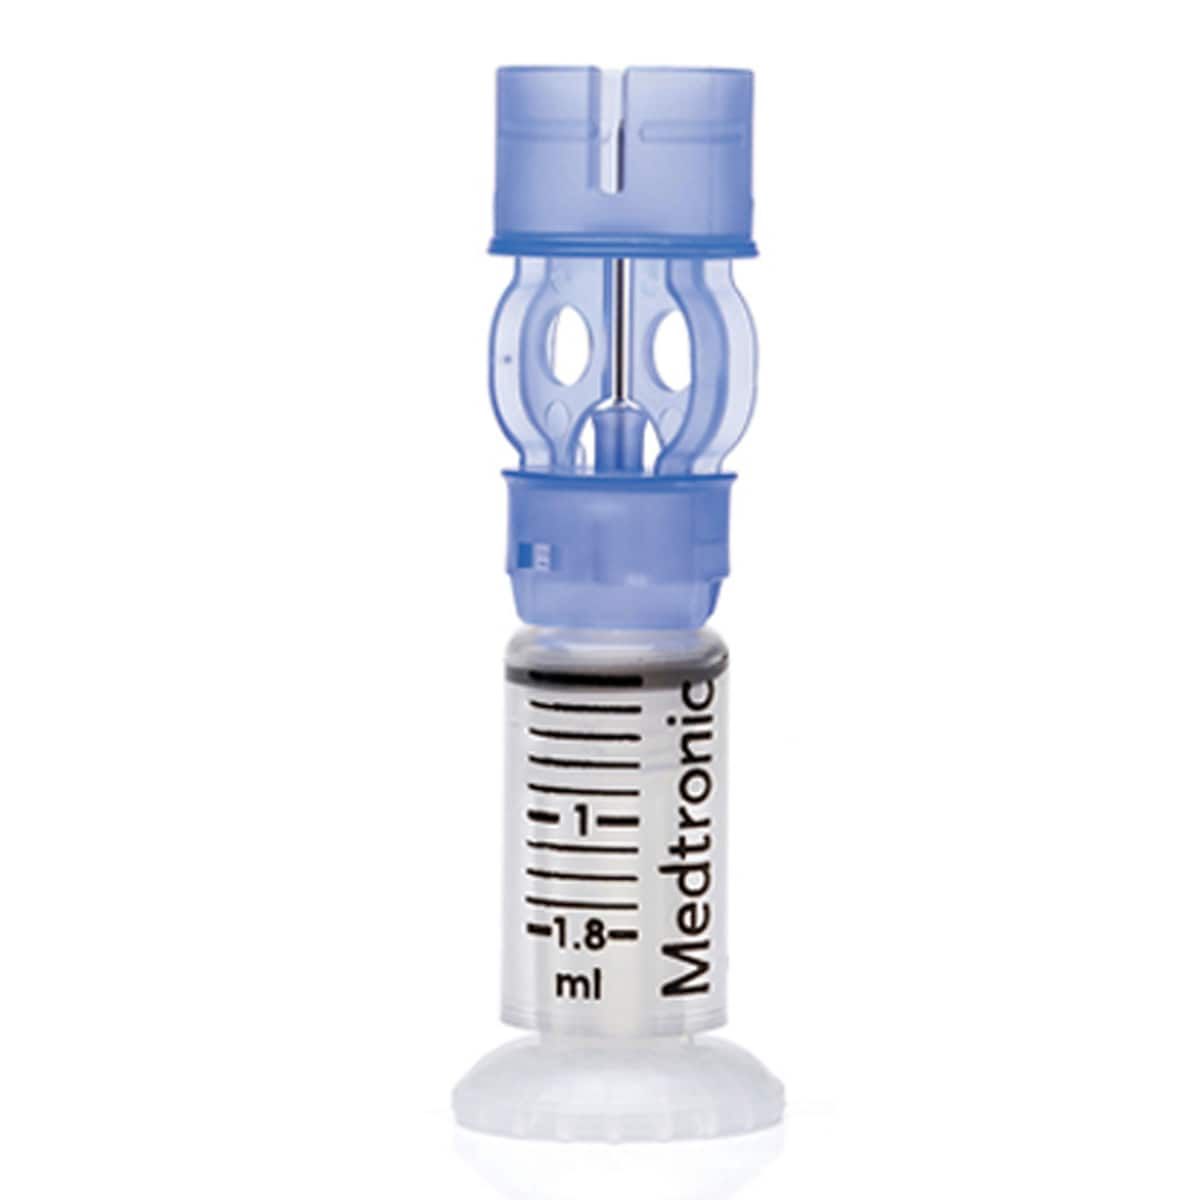 Medtronic Insulin Reservoir Paradigm 1.8ml